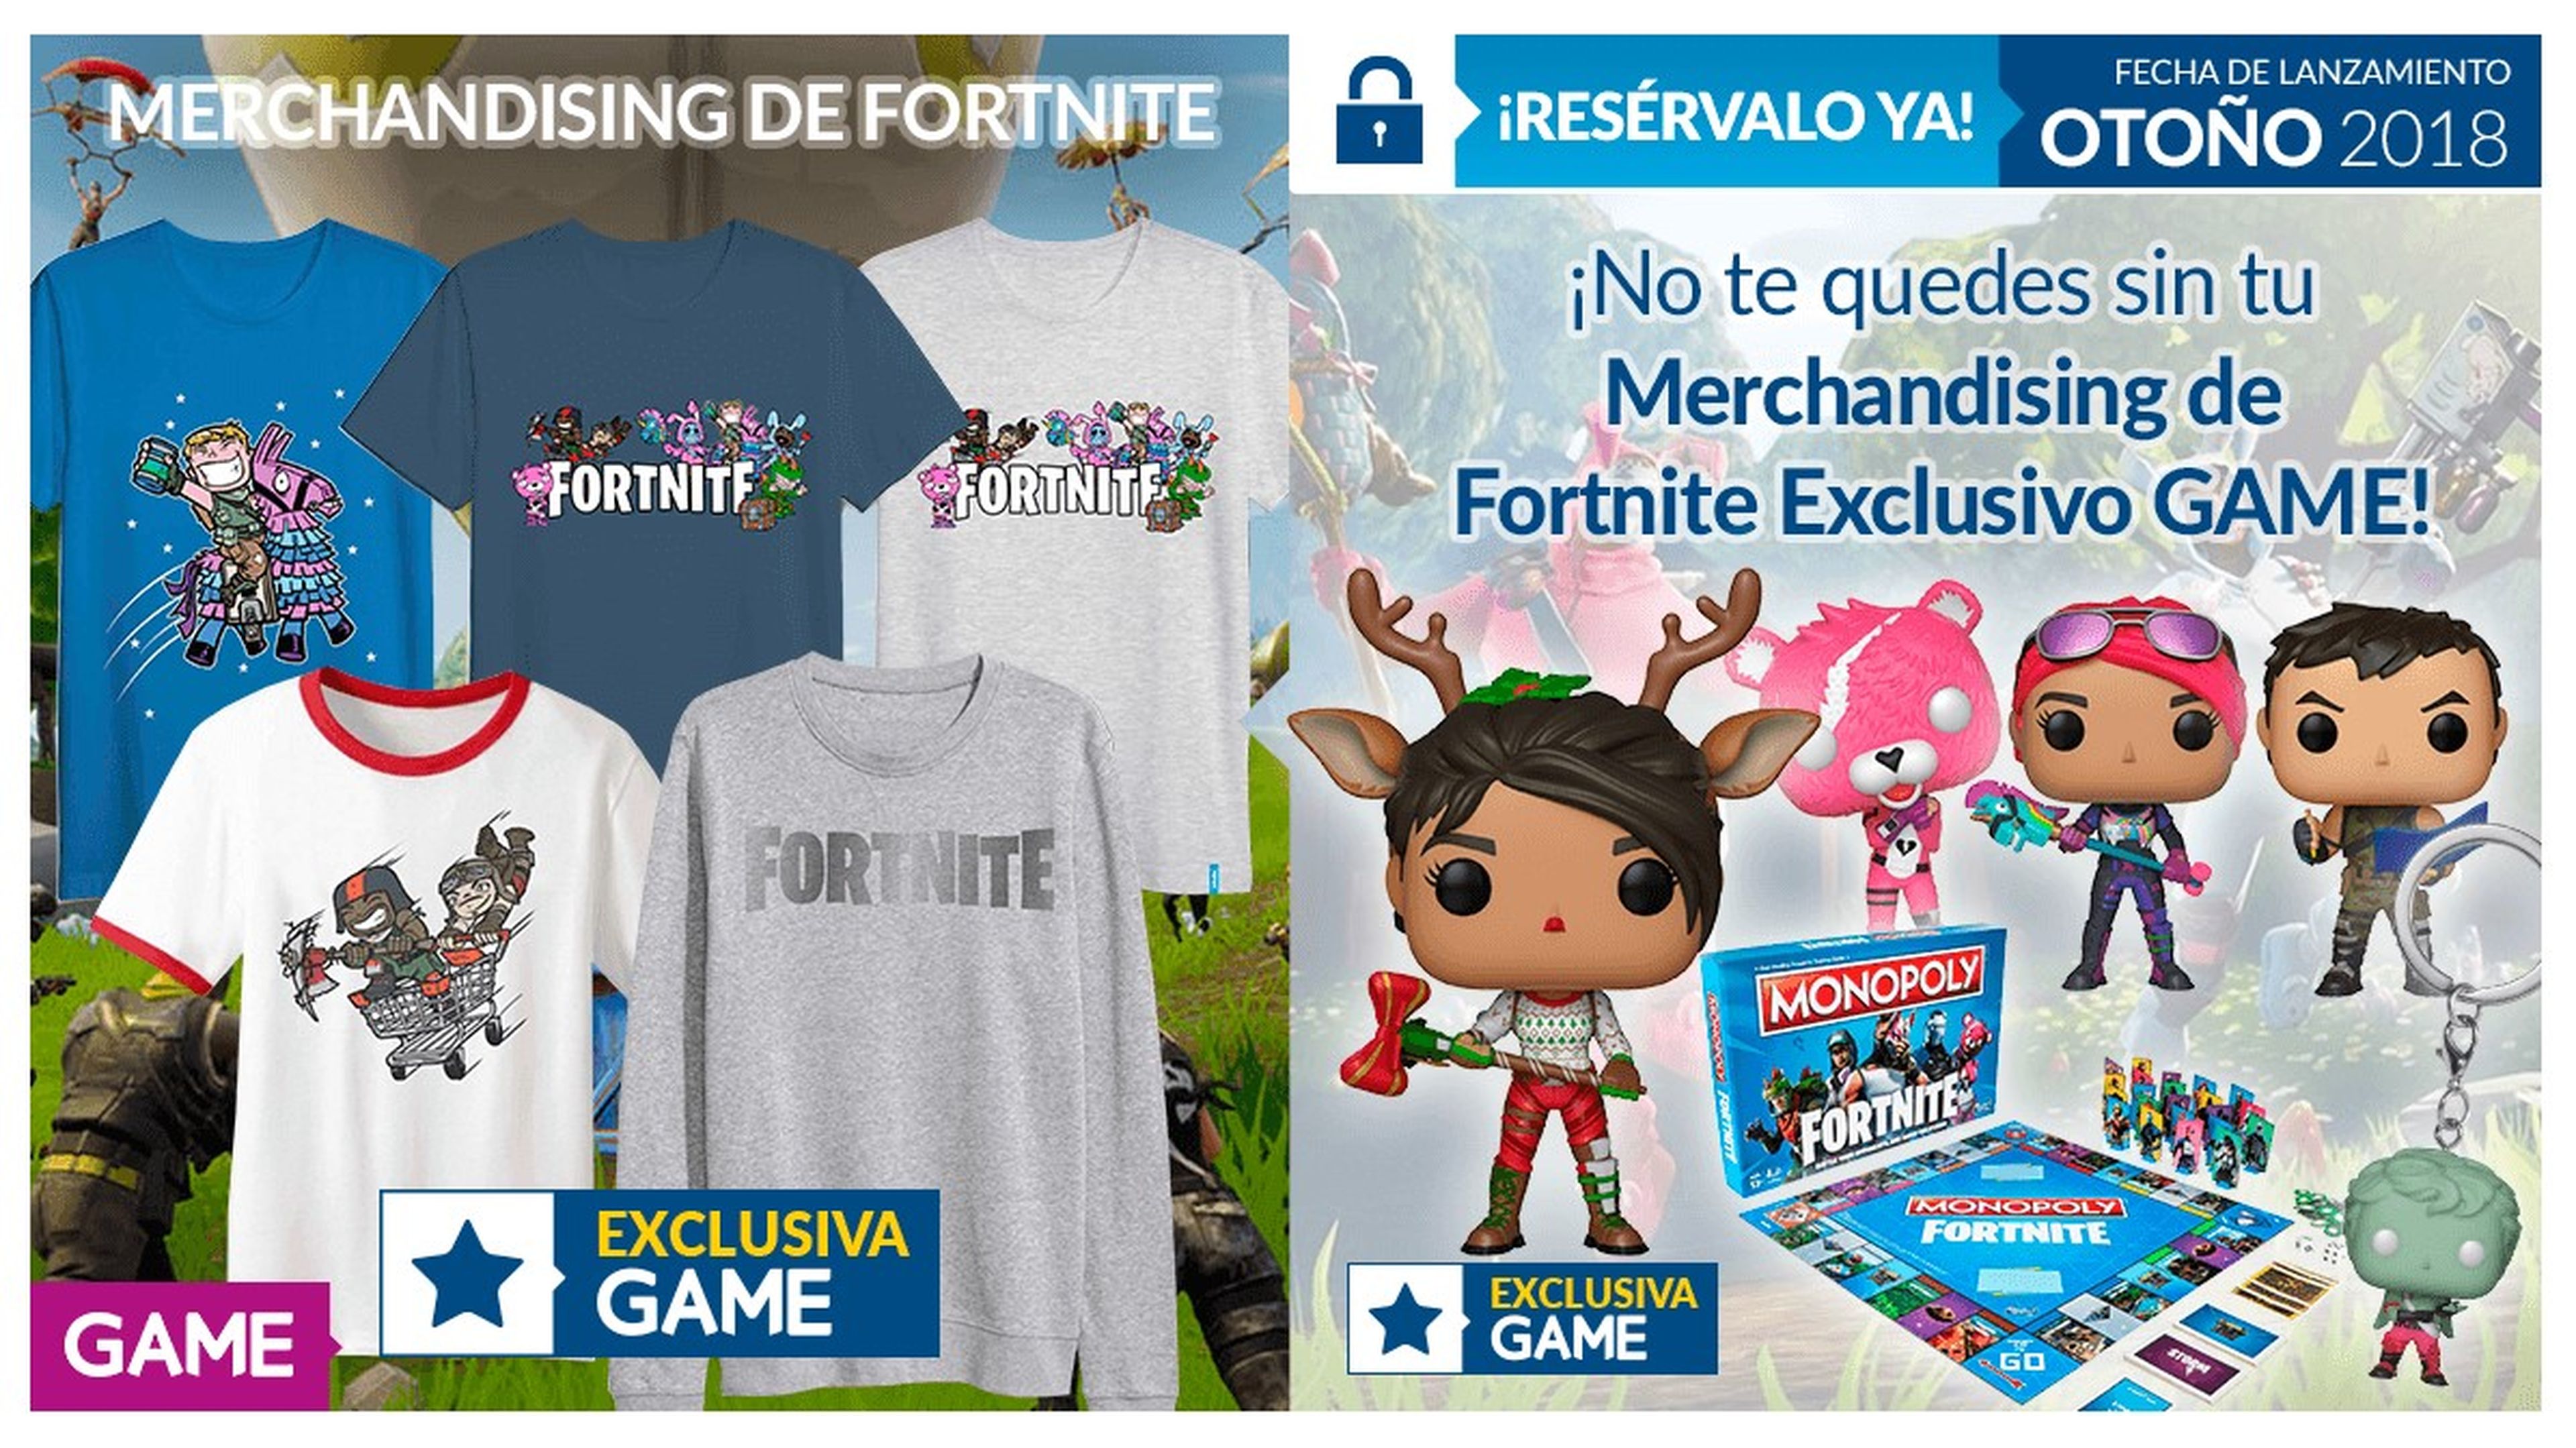 Merchandising de Fortnite en GAME